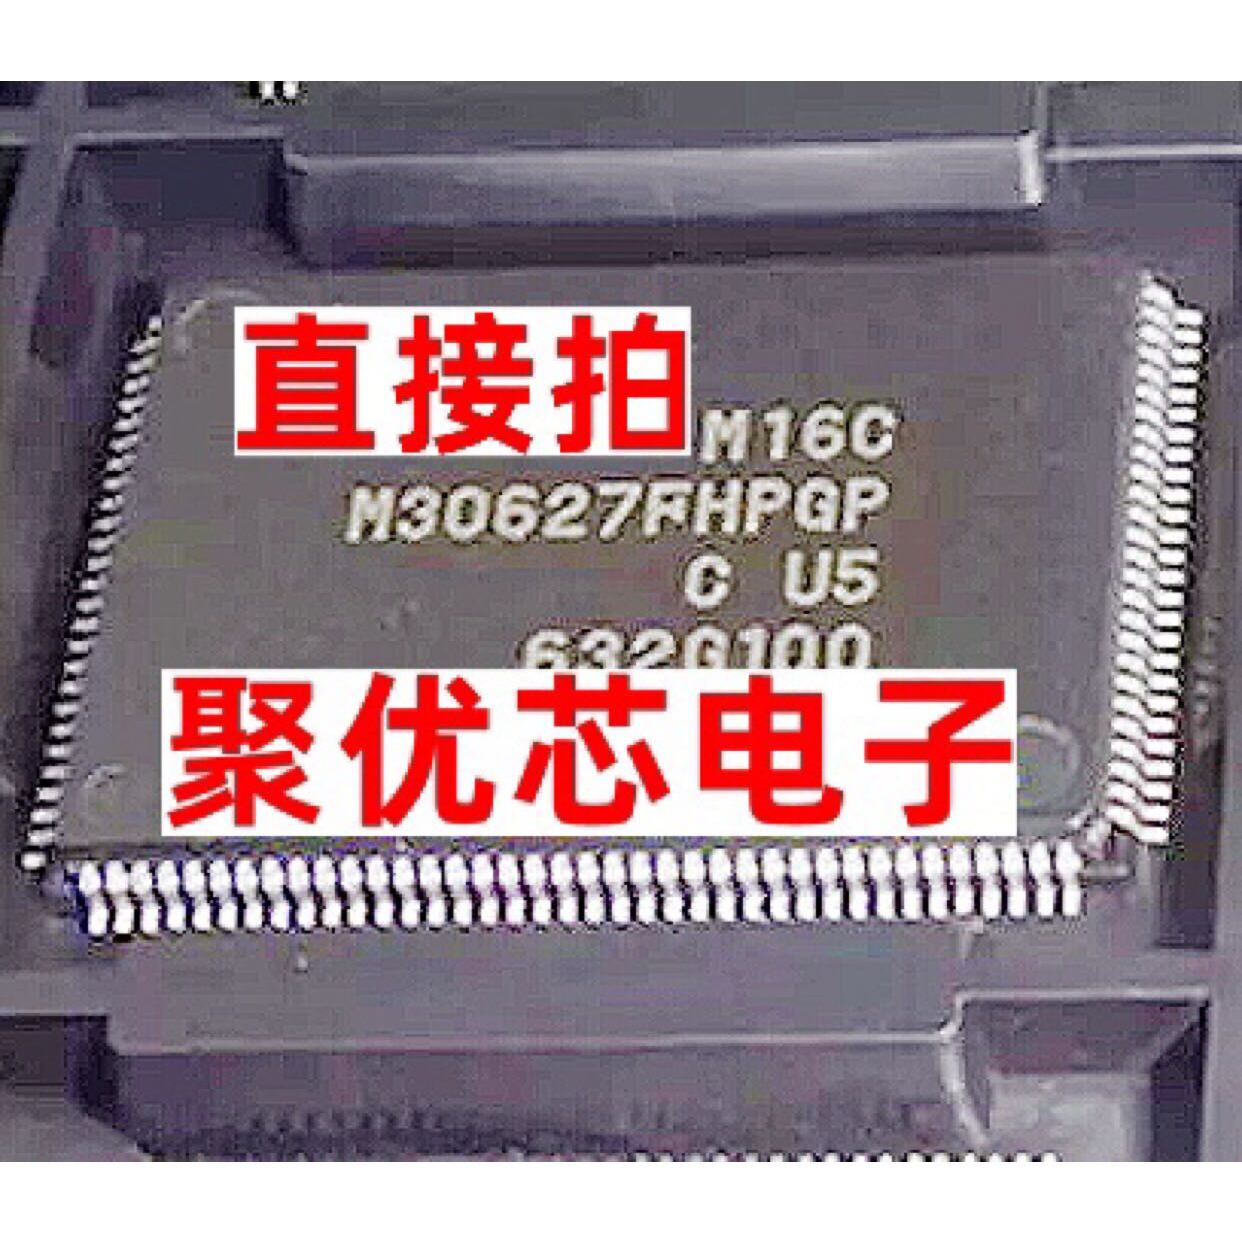 M30627FHPGP QFP128 M16C微控制器芯片现货贴片芯片